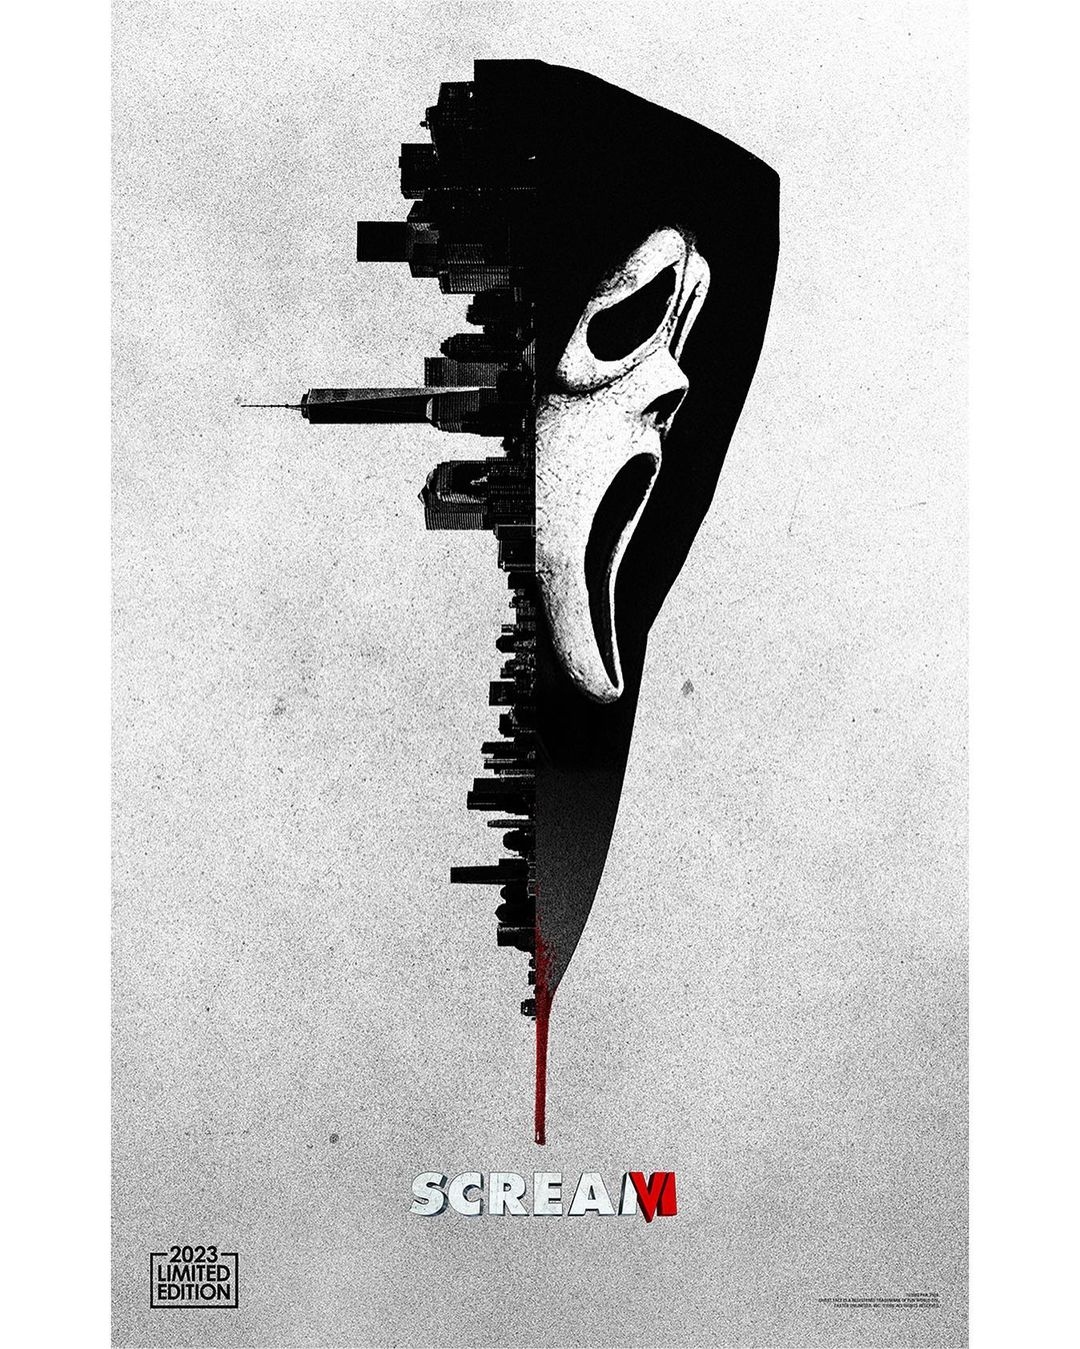 Scream 6: todo sobre la nueva película de terror con Jenna Ortega